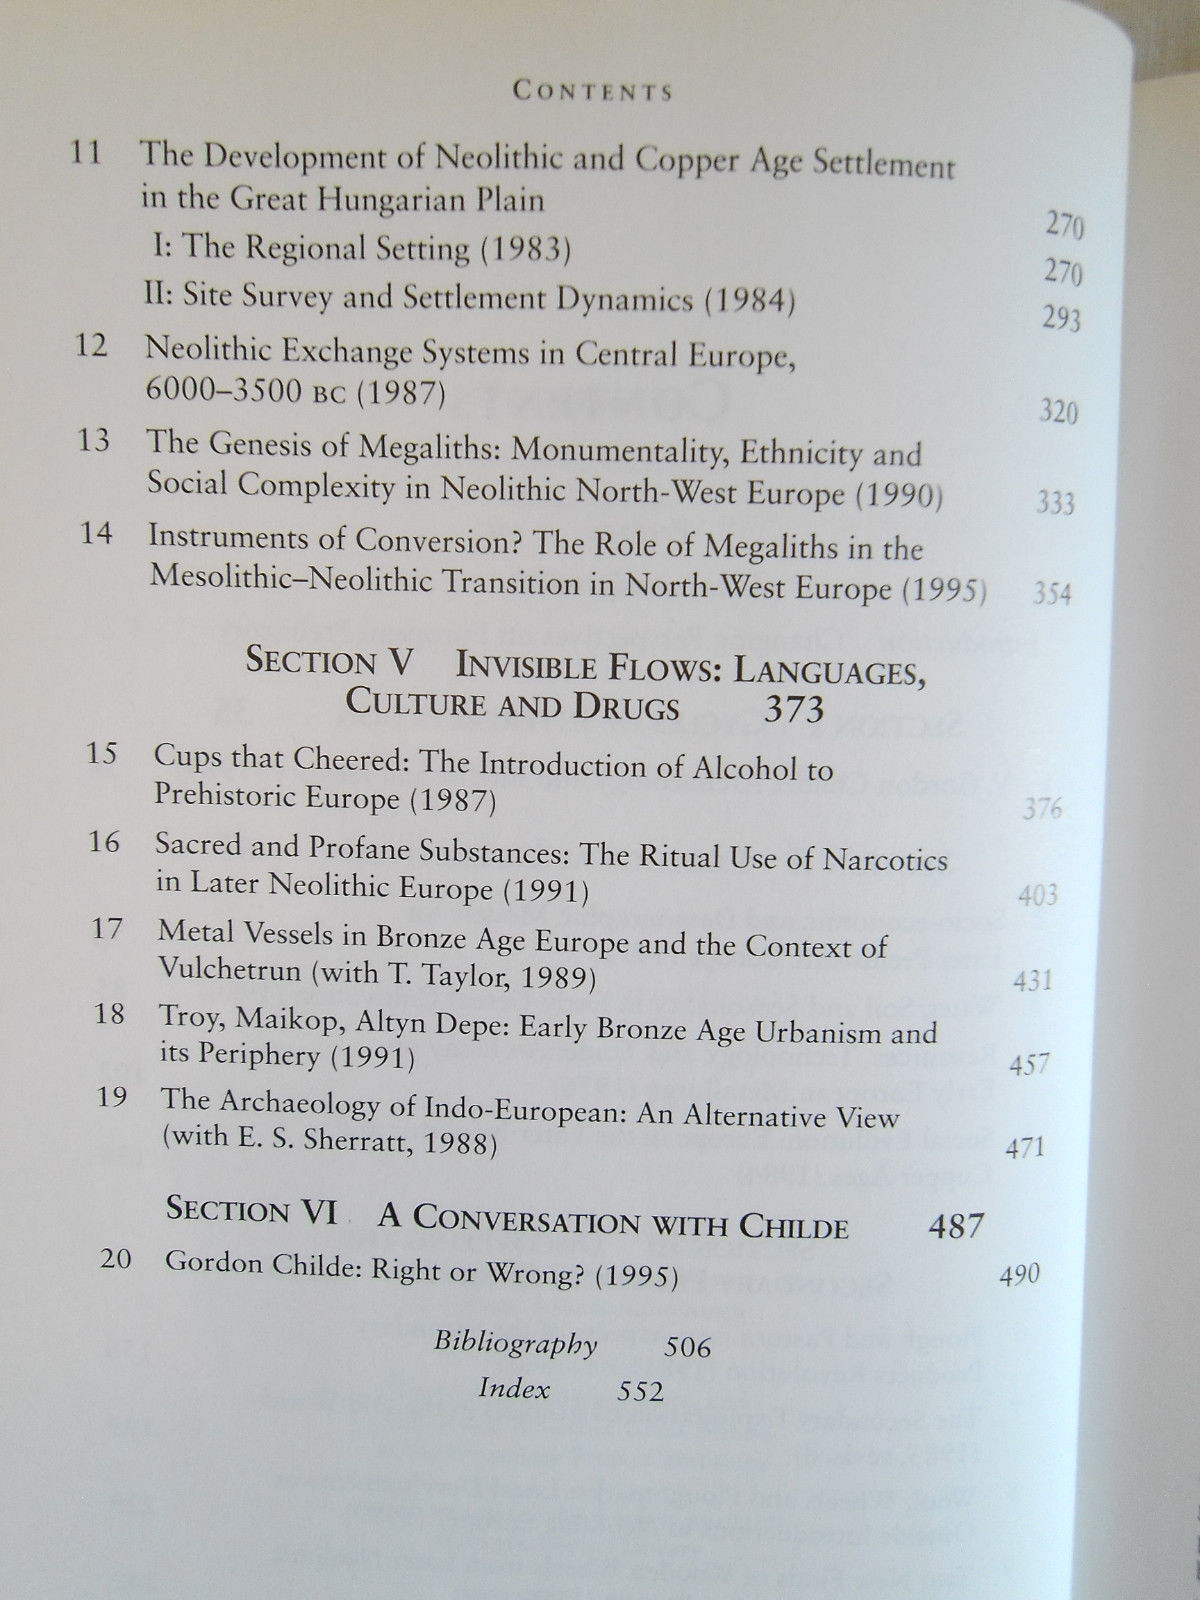 Economy and Society in Prehistoric Europe - Andrew Sherratt - Economics 1997